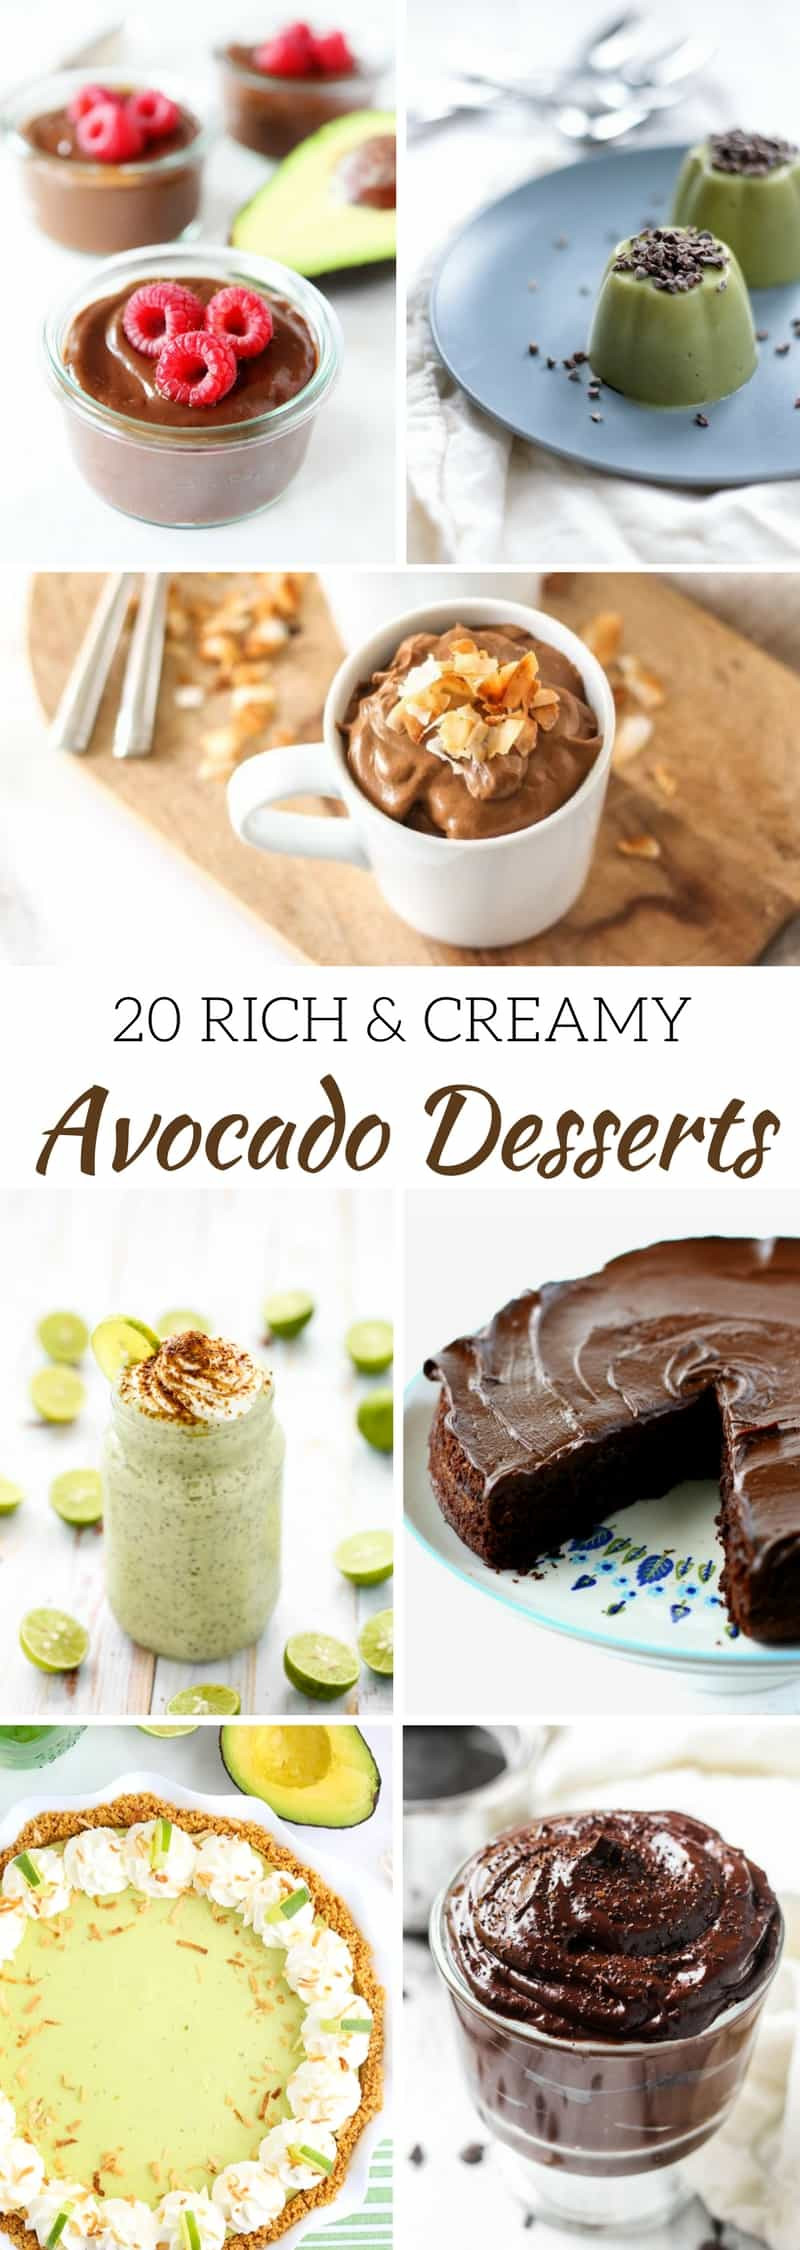 Avocado Dessert Recipes
 20 Rich and Creamy Avocado Dessert Recipes